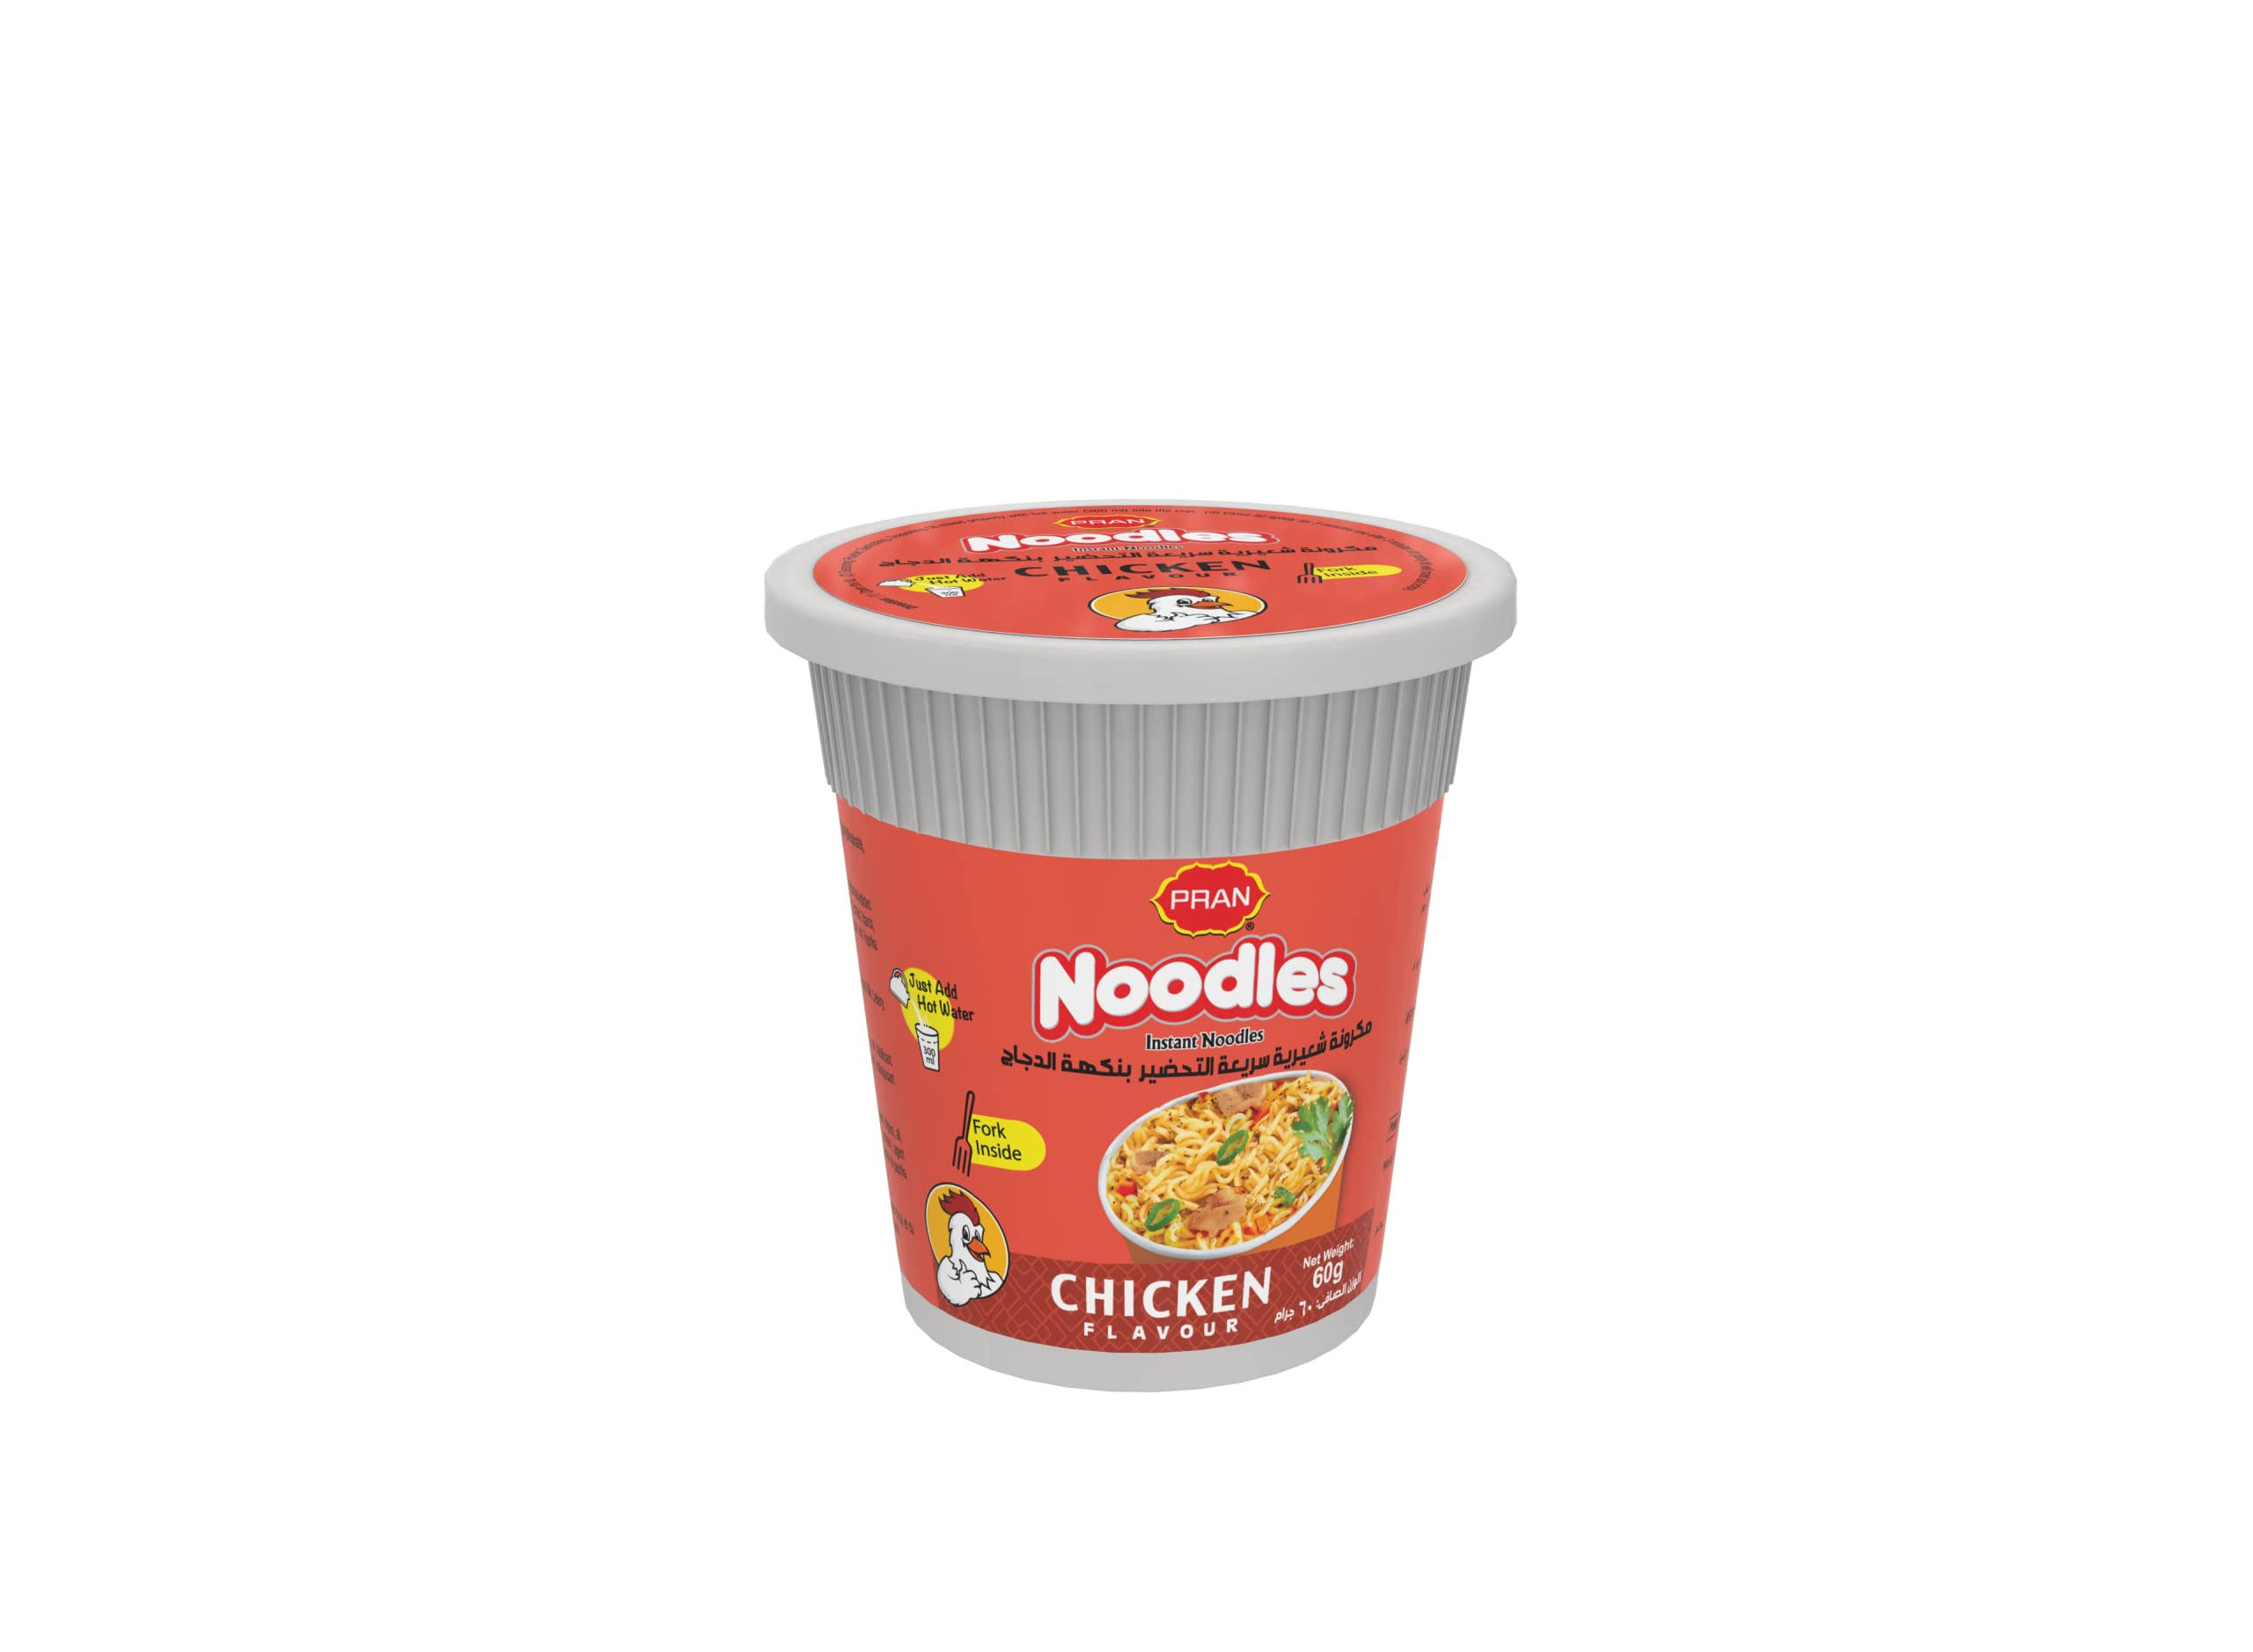 Mr Noodles - Chicken, 60g